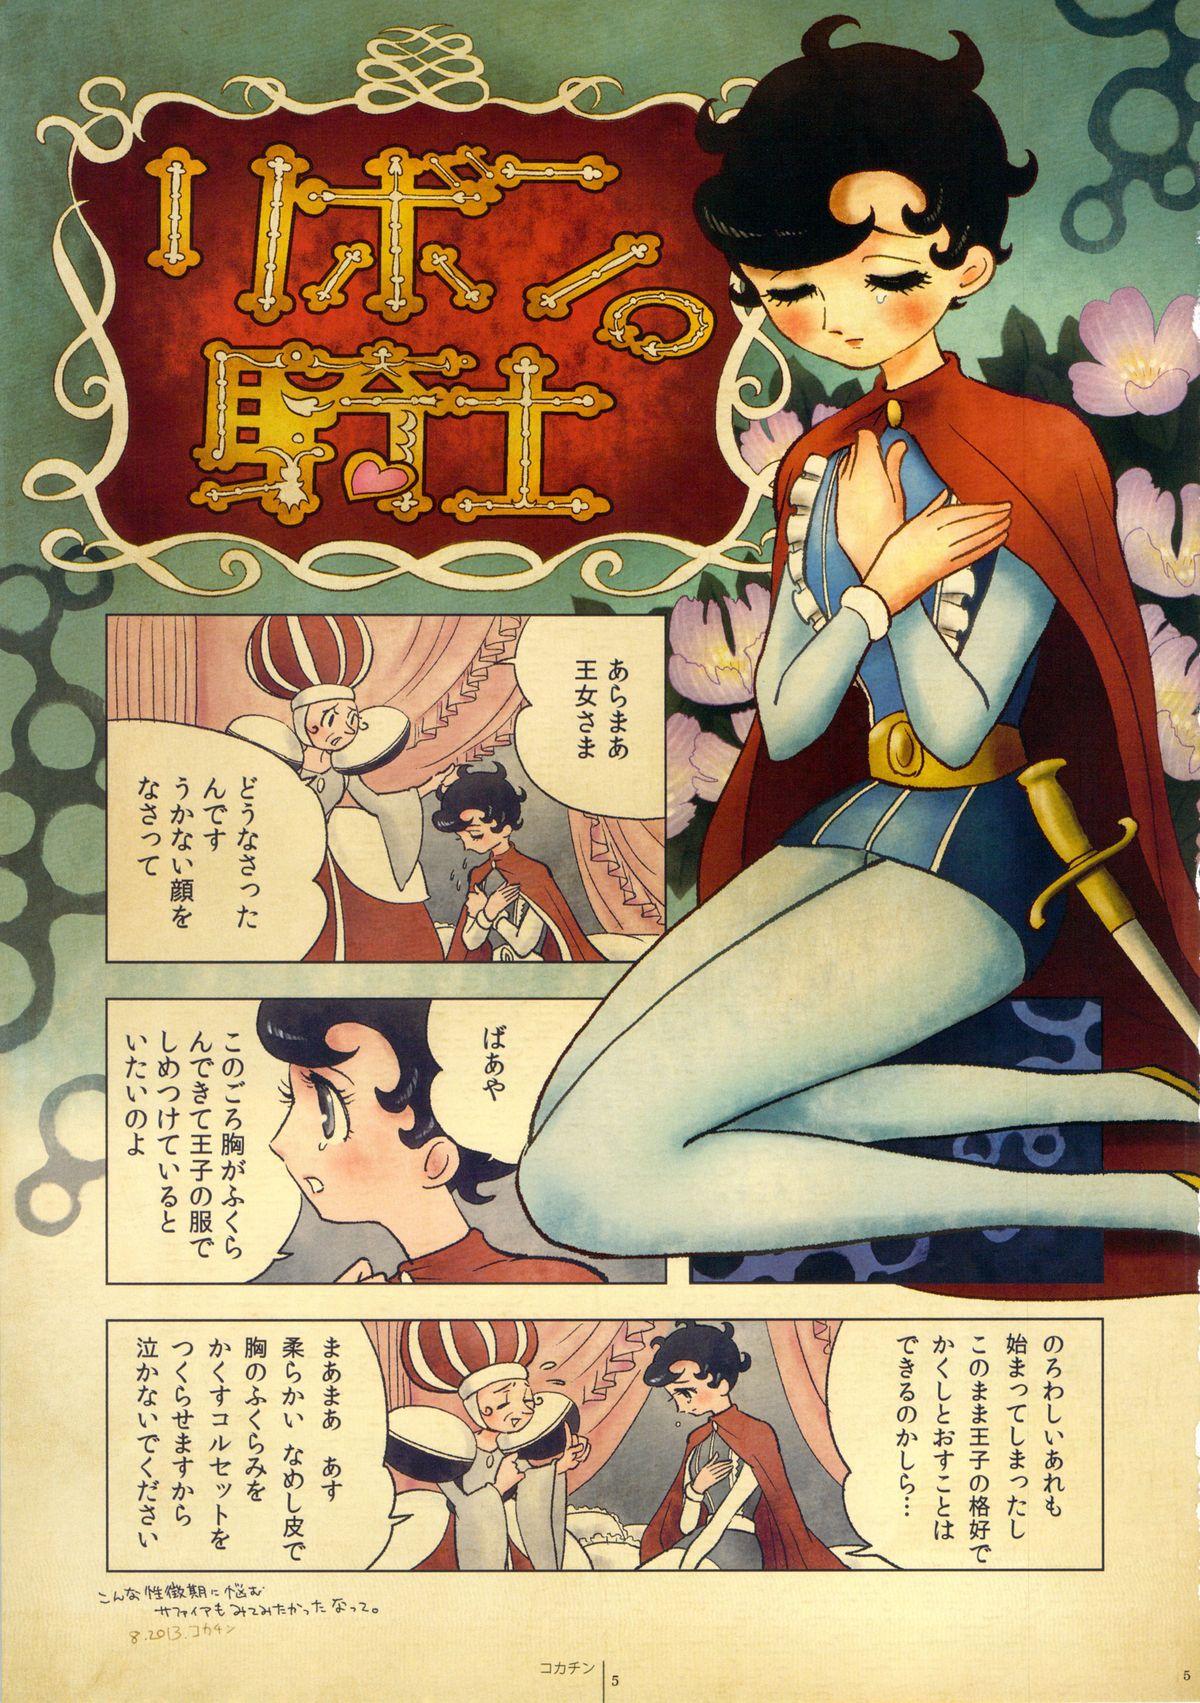 Paja FLOUR2 Tezuka Manga Graffiti - Princess knight Astro boy Triton of the sea Gay Studs - Page 5